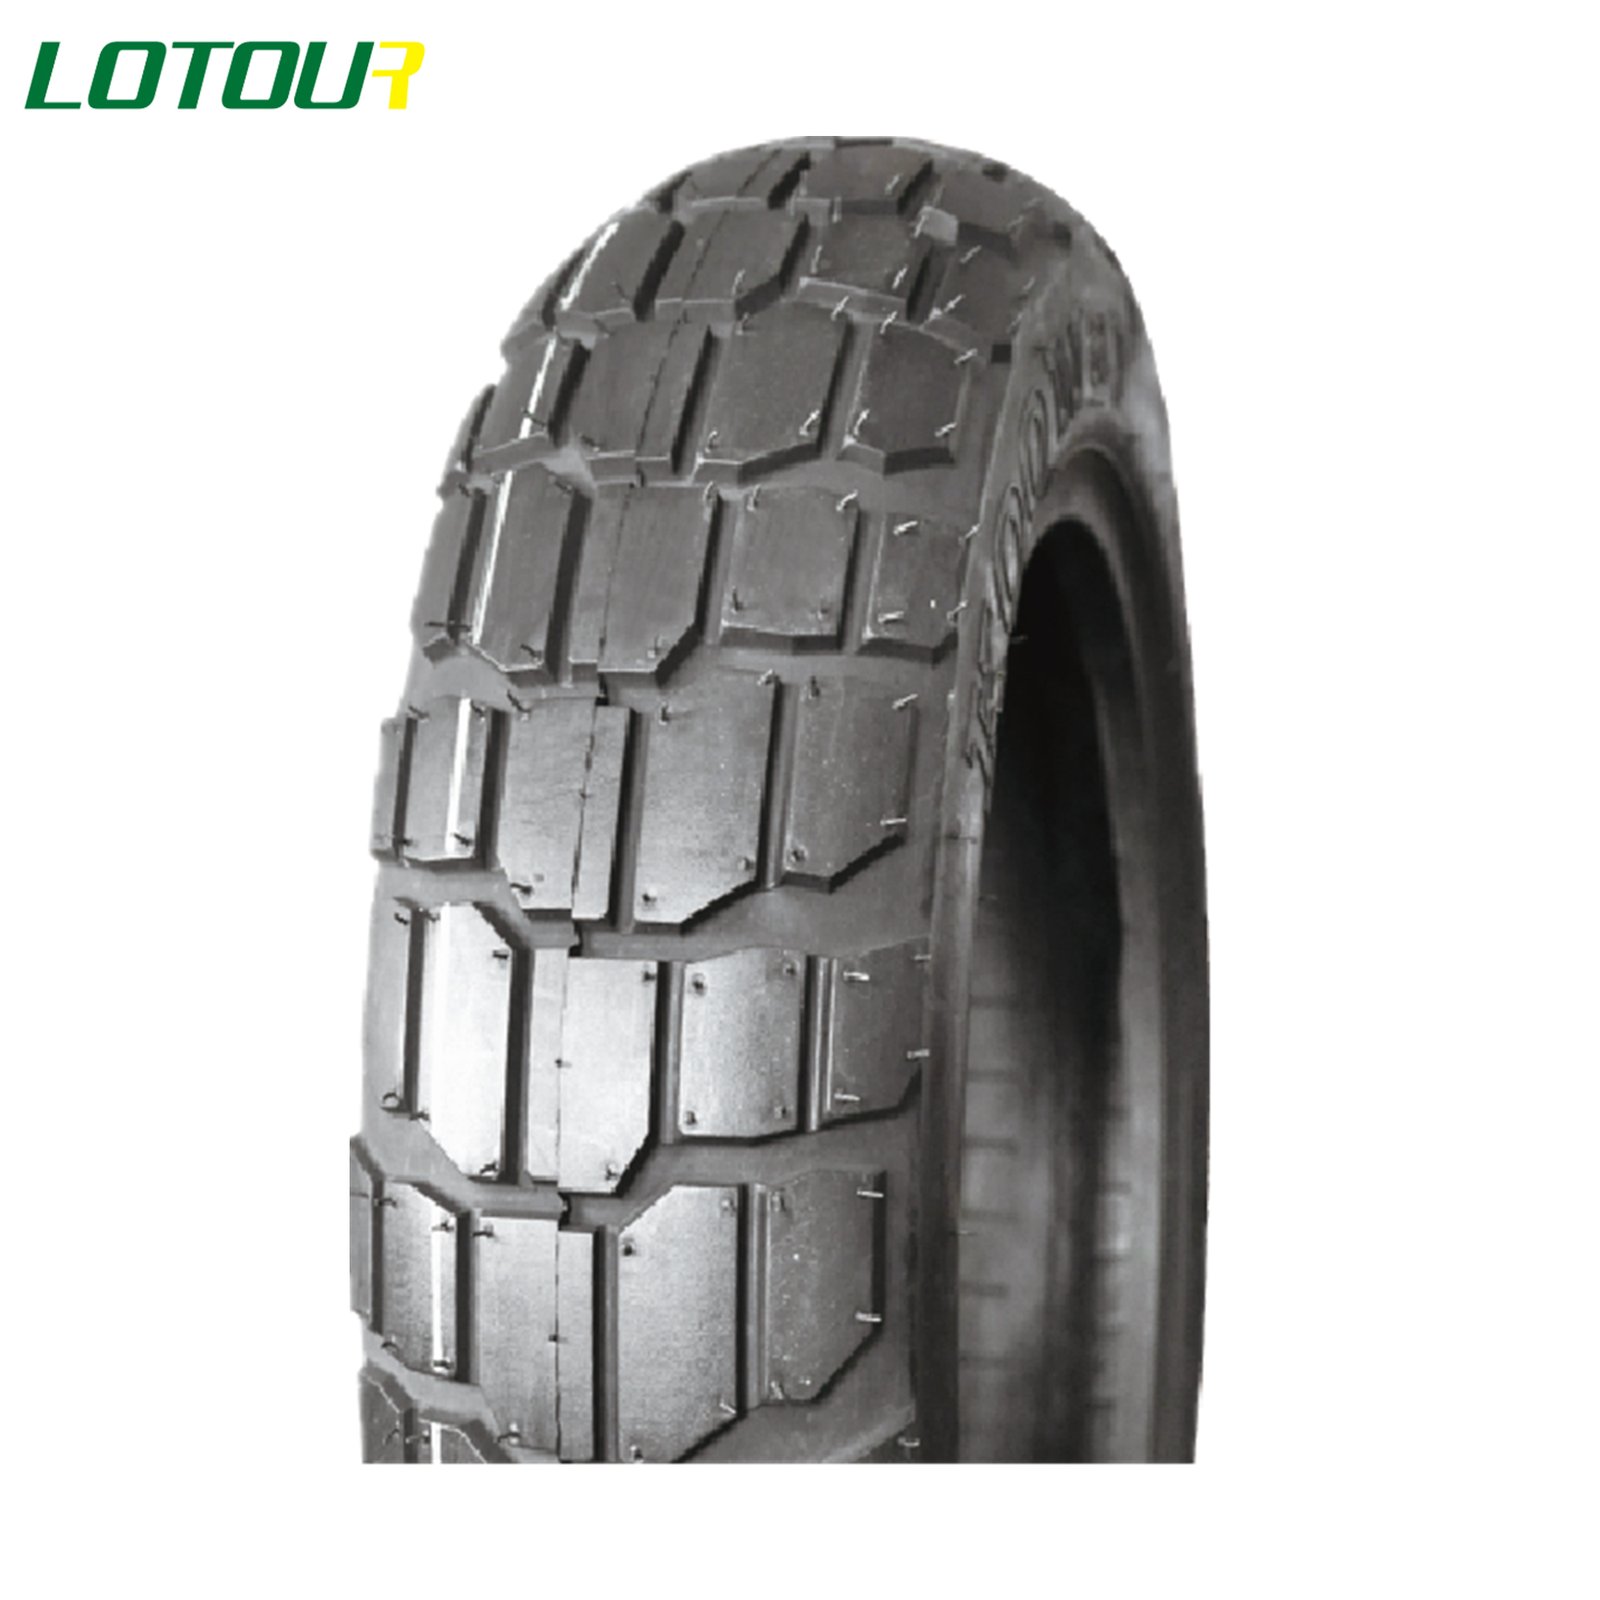 Lotour Tire M3021